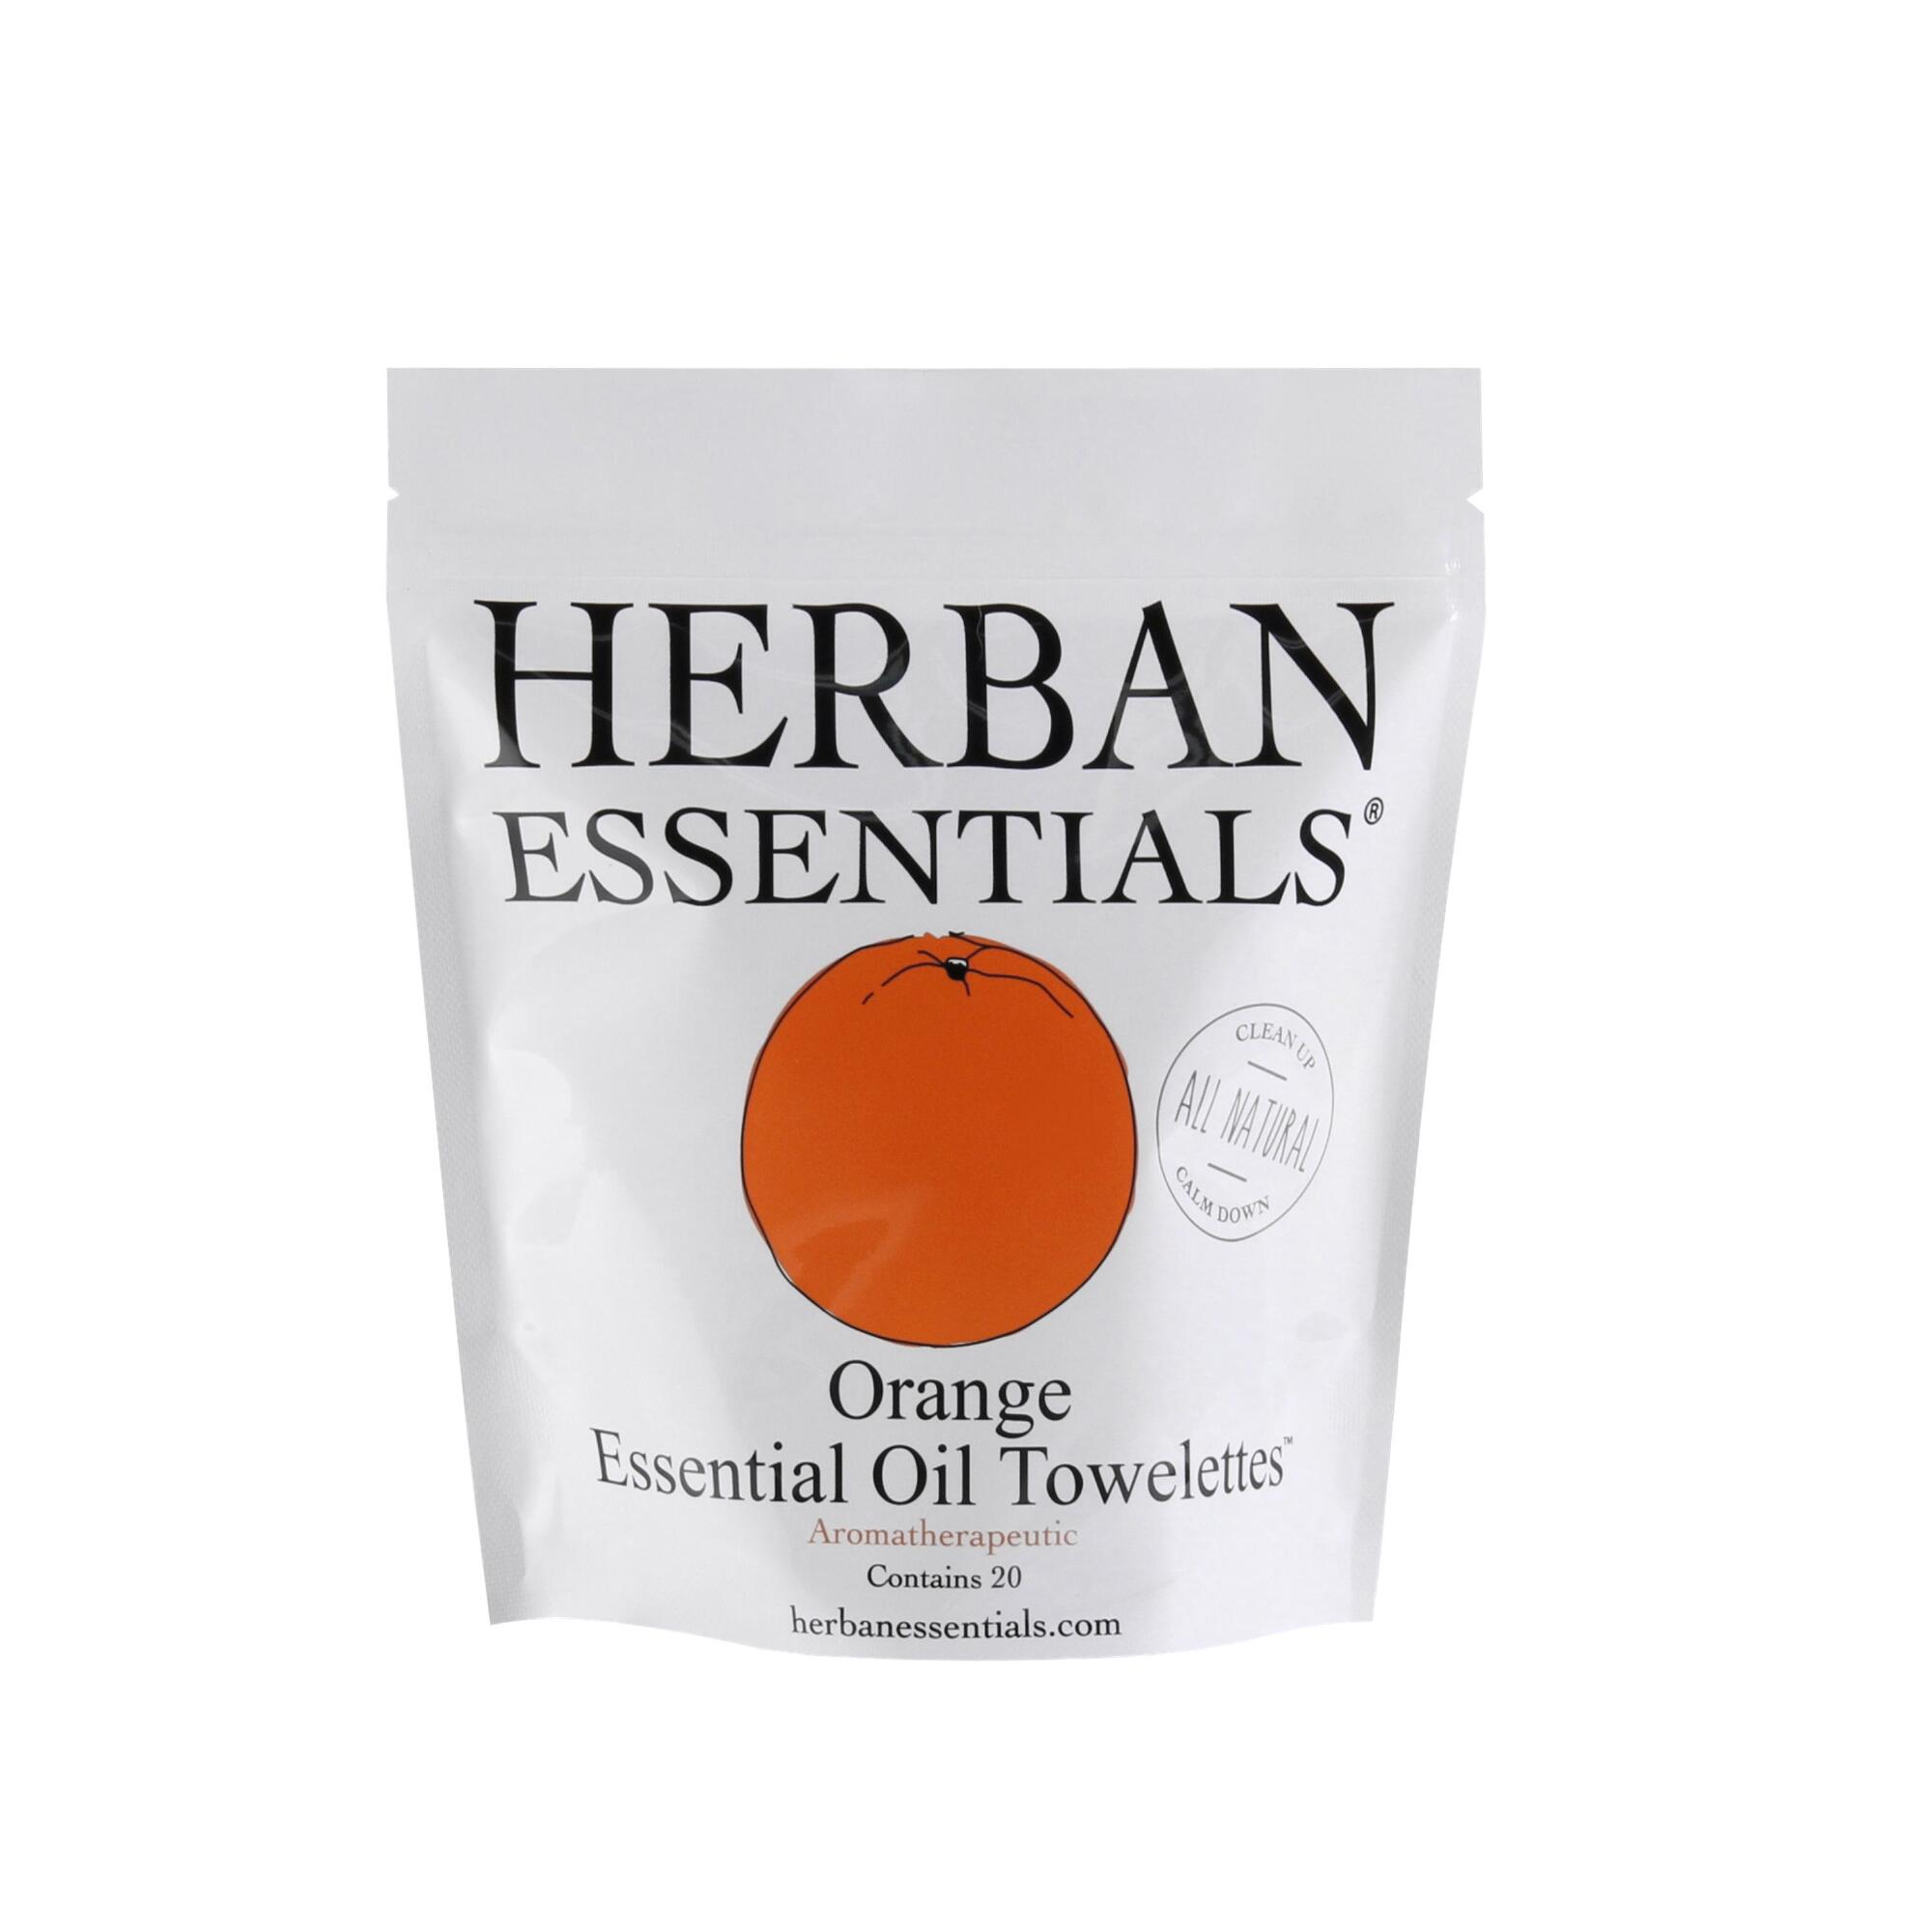 Herban Essentials Orange Essential Oil Wipes 20 Count by World Market